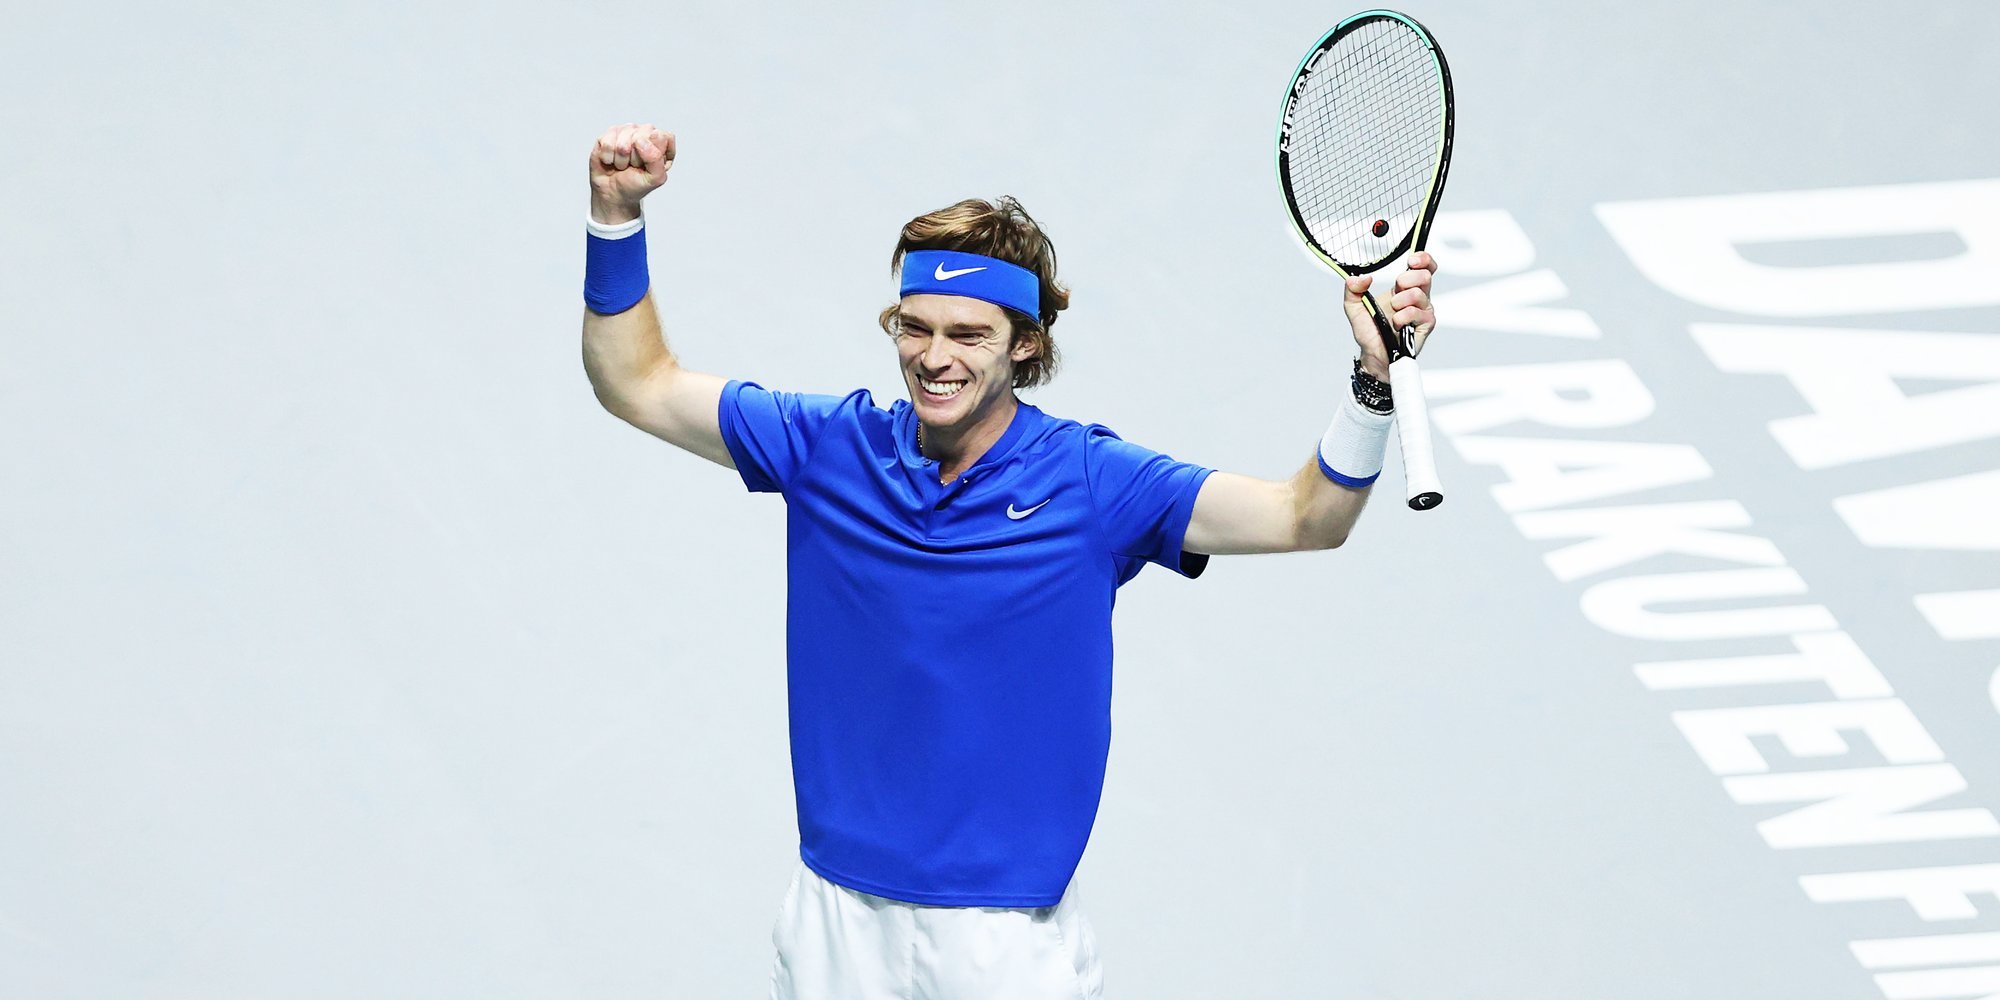 Рублев после турнира в Роттердаме поднялся на 36 позиций в чемпионской гонке ATP